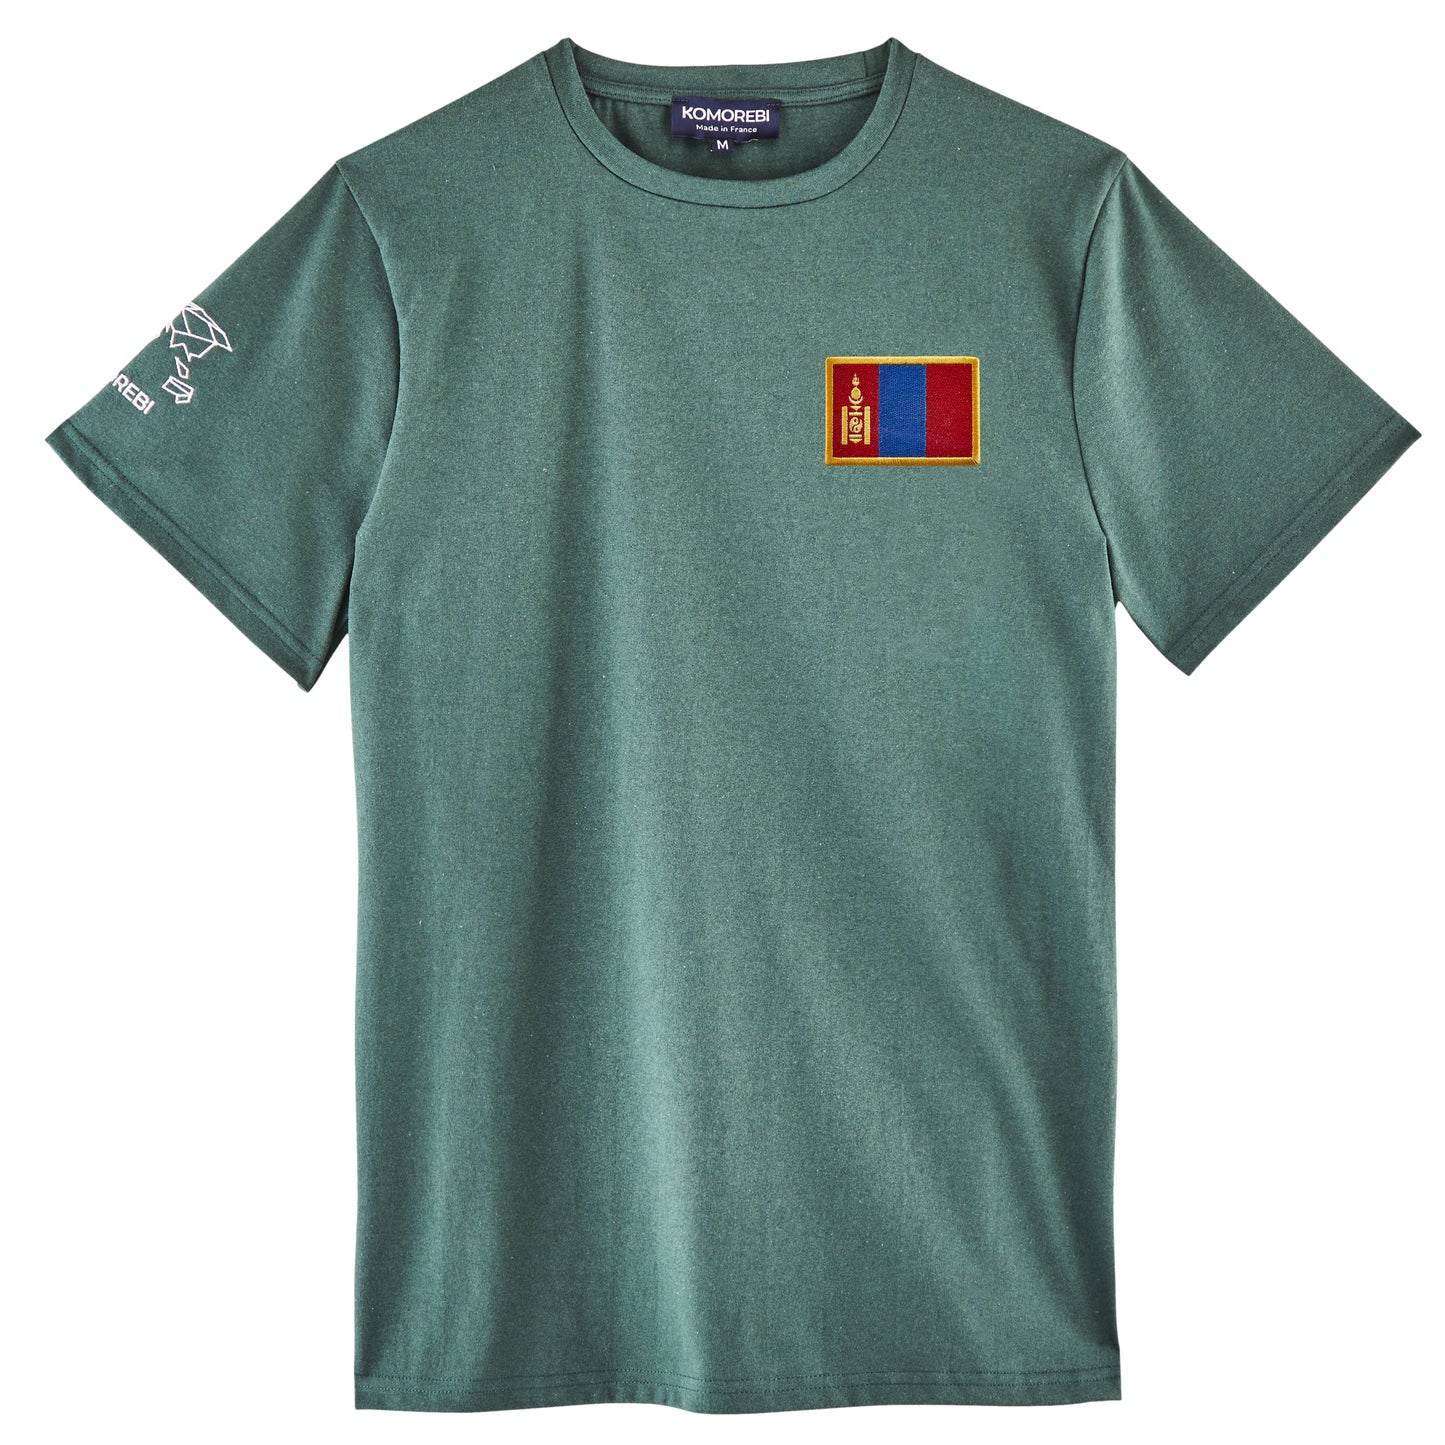 Mongolie • T-shirt